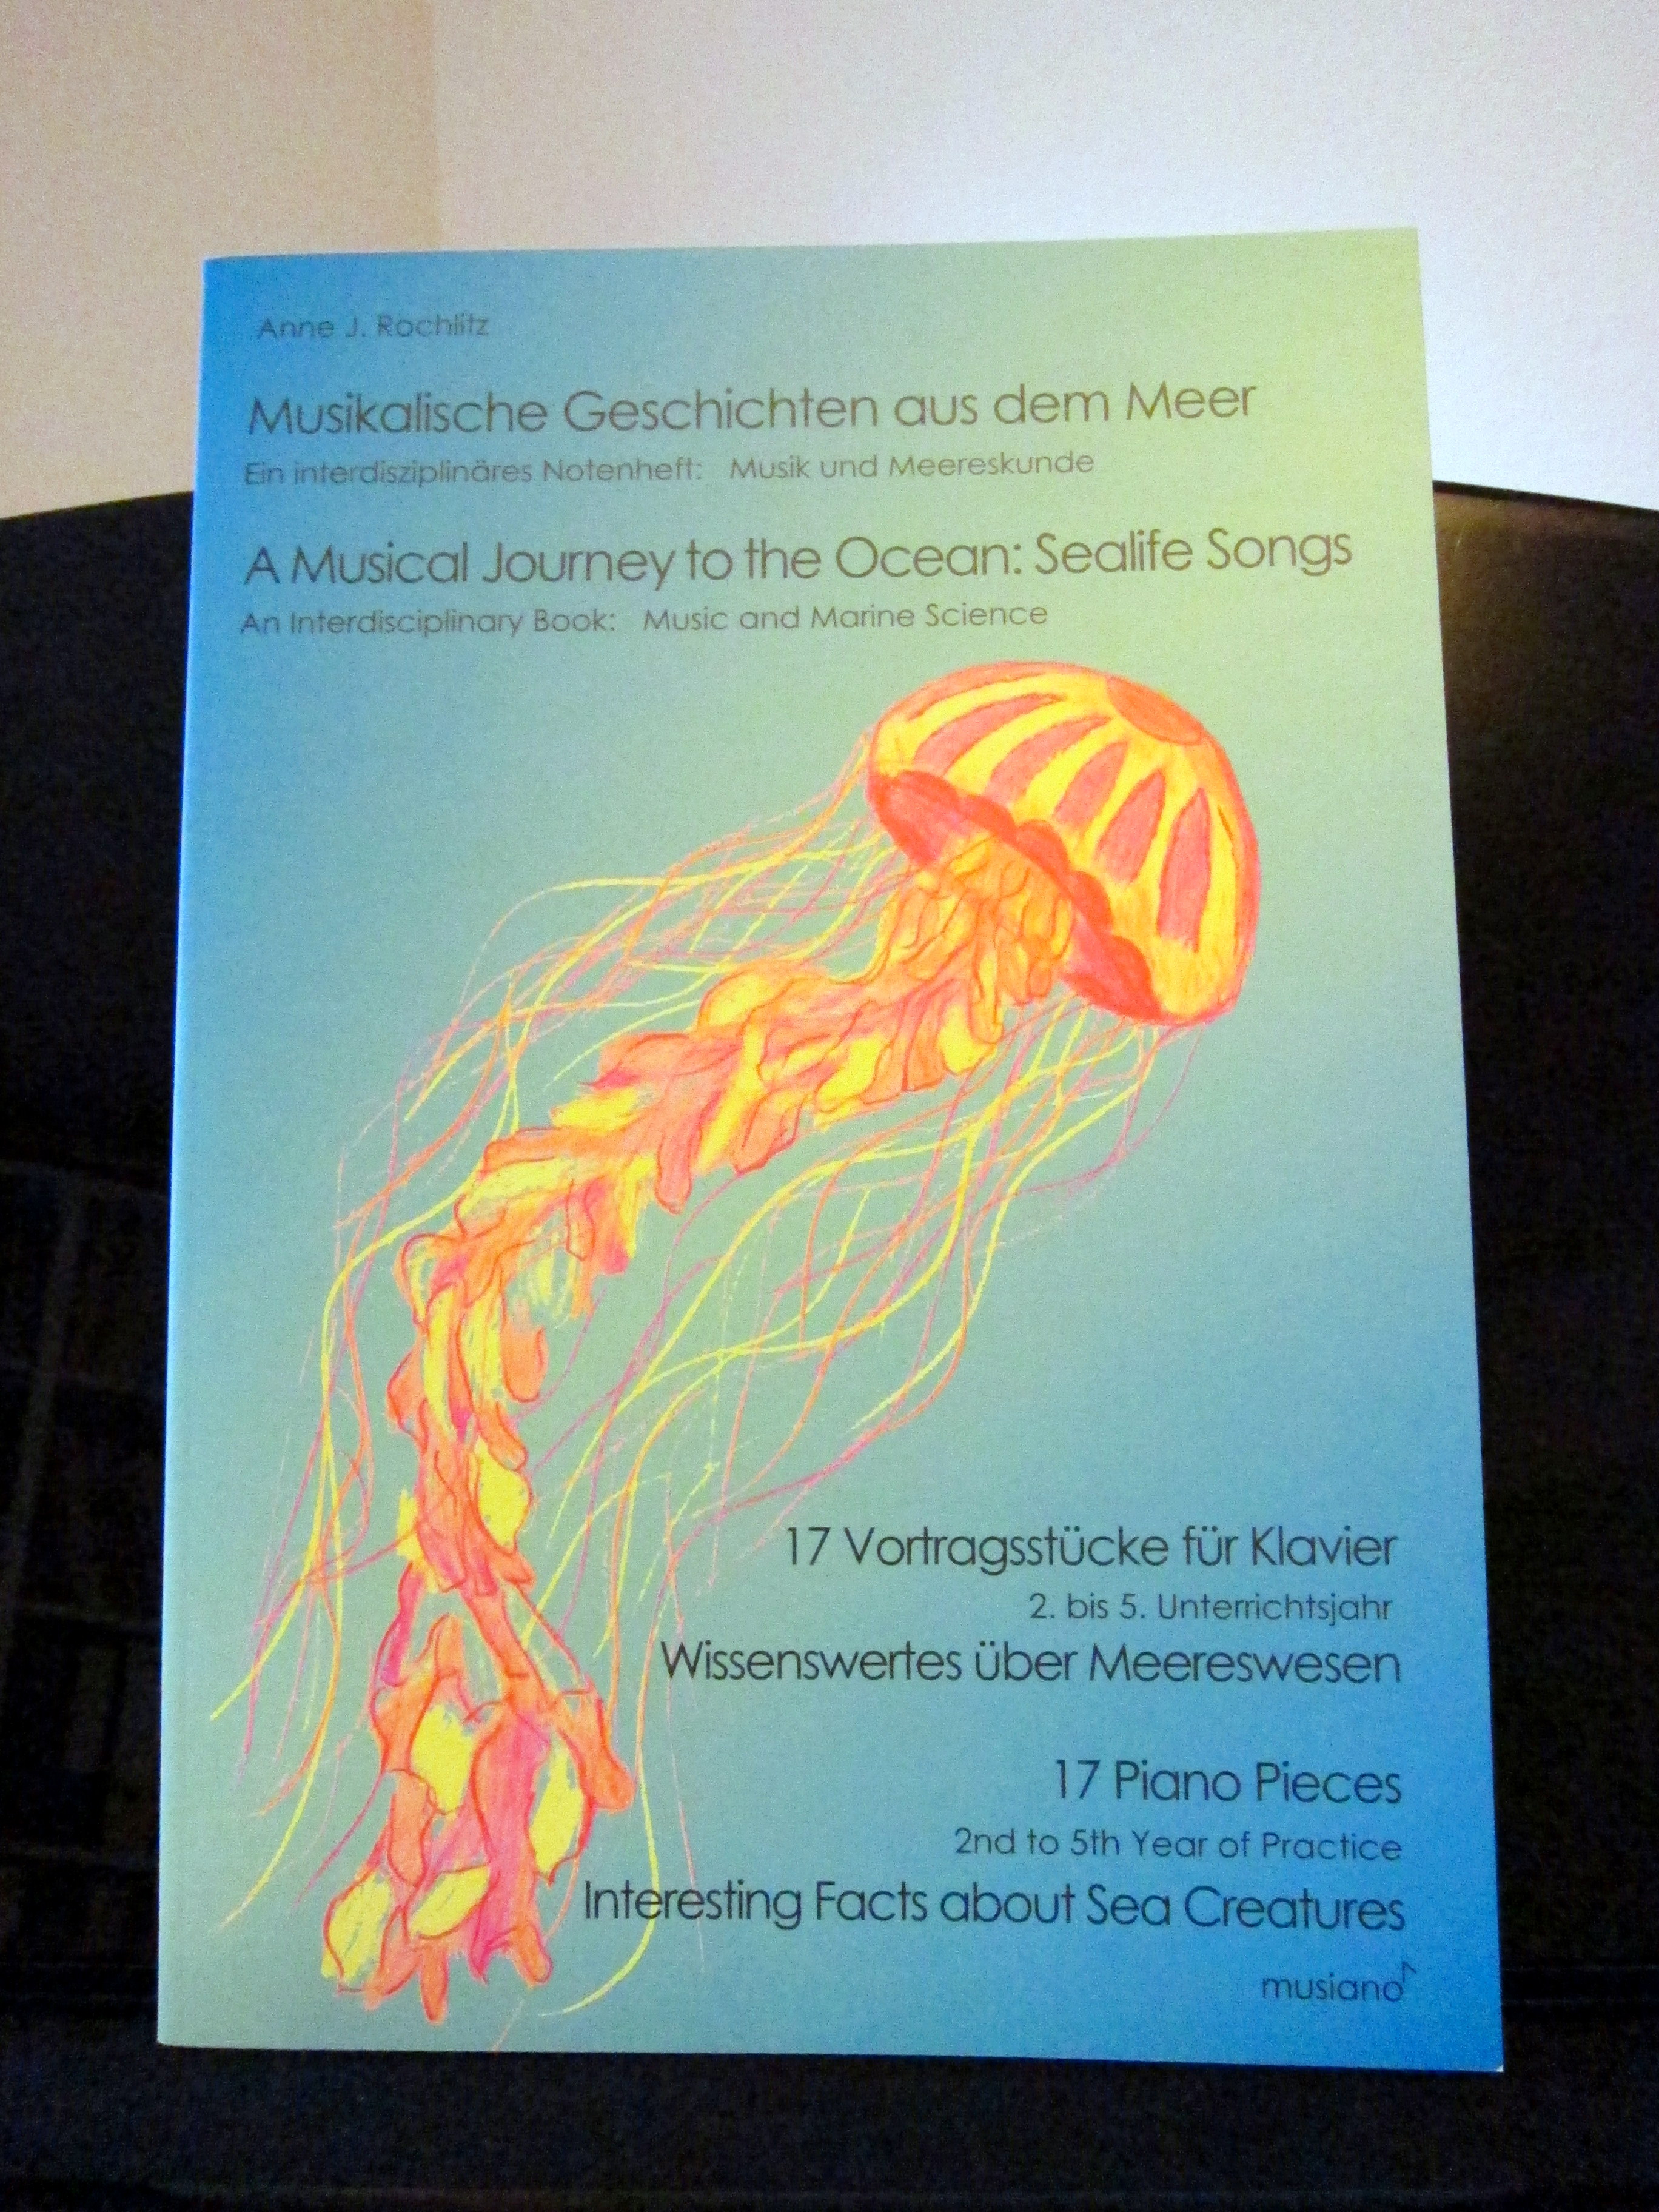 Anne J. Rochlitz "Musikalische Geschichten aus dem Meer" - Der